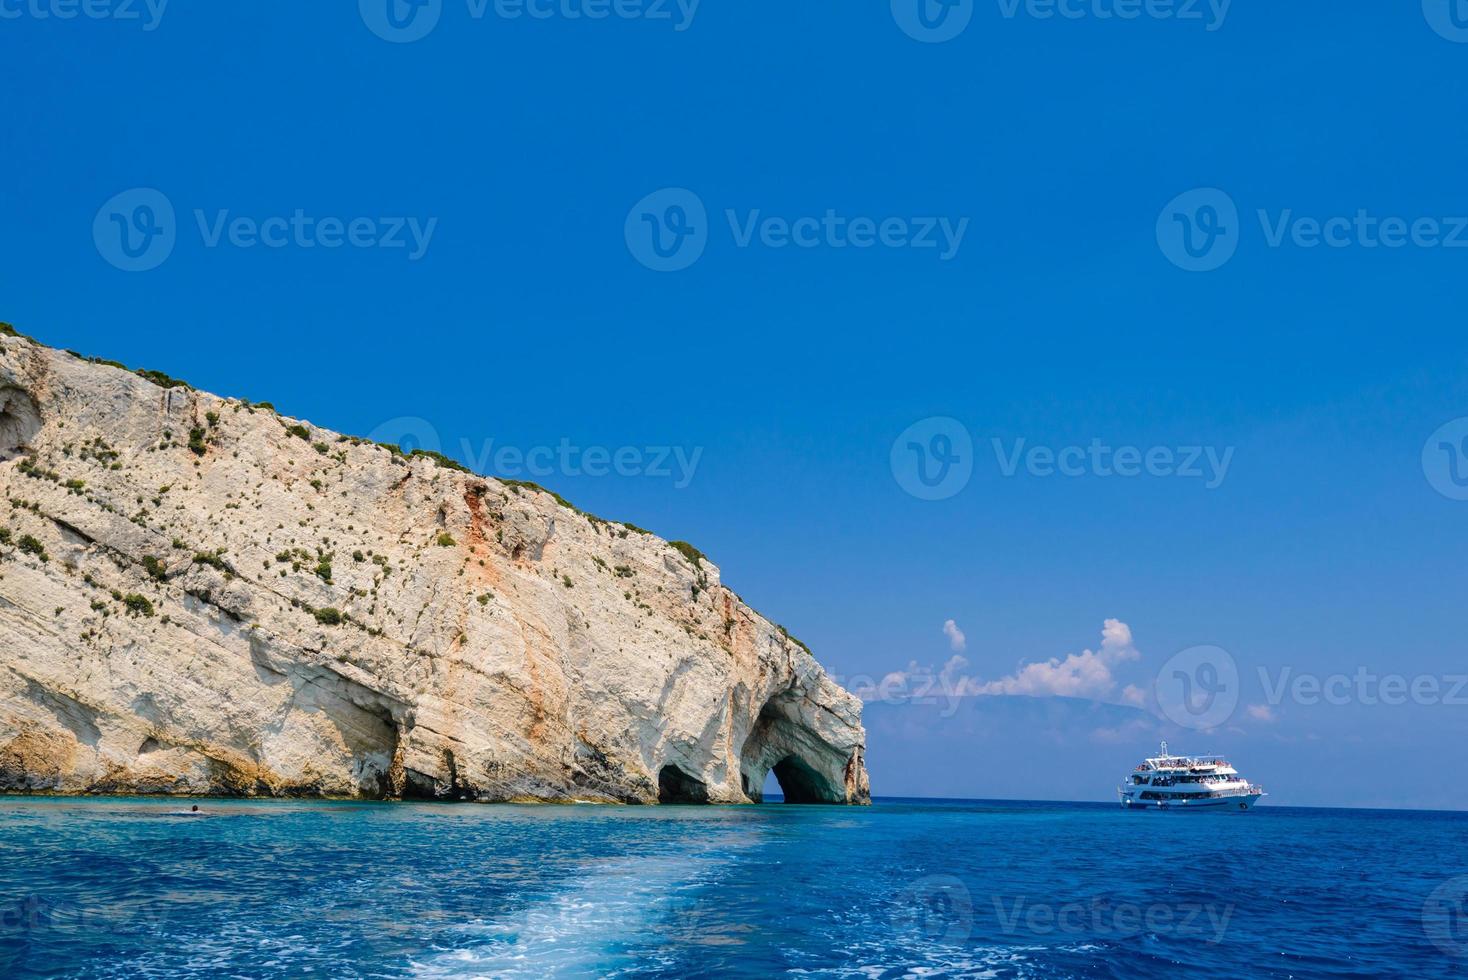 côte rocheuse, grotte, mer et bateau photo